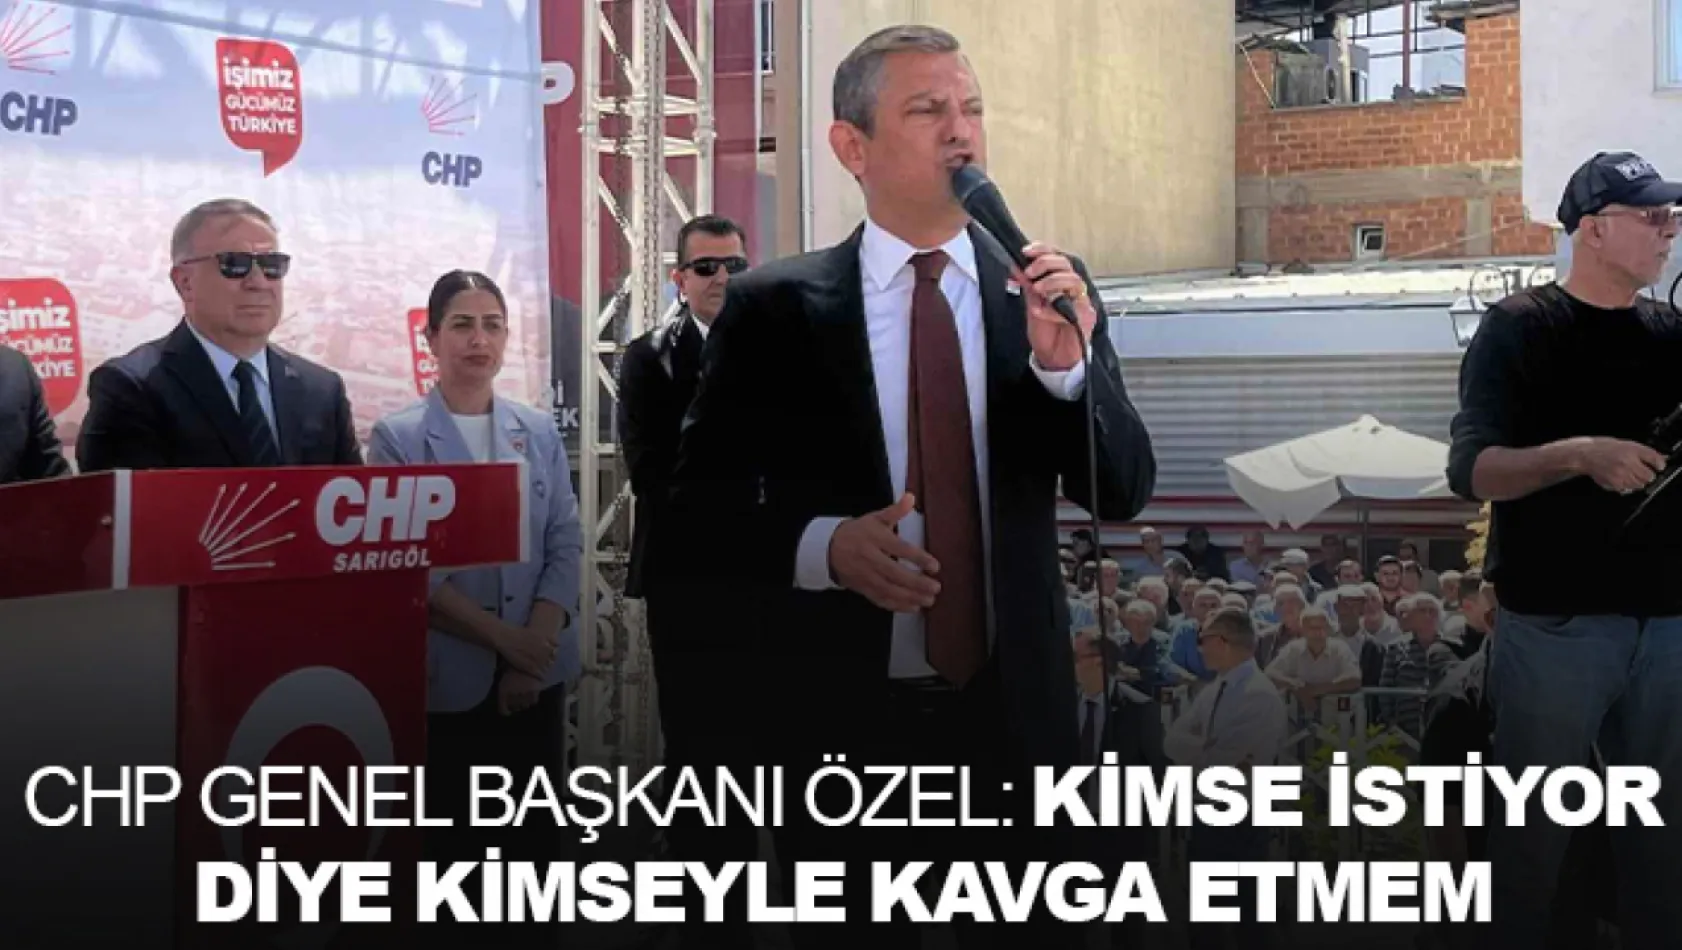 CHP Genel Başkanı Özel: Kimse istiyor diye kimseyle kavga etmem